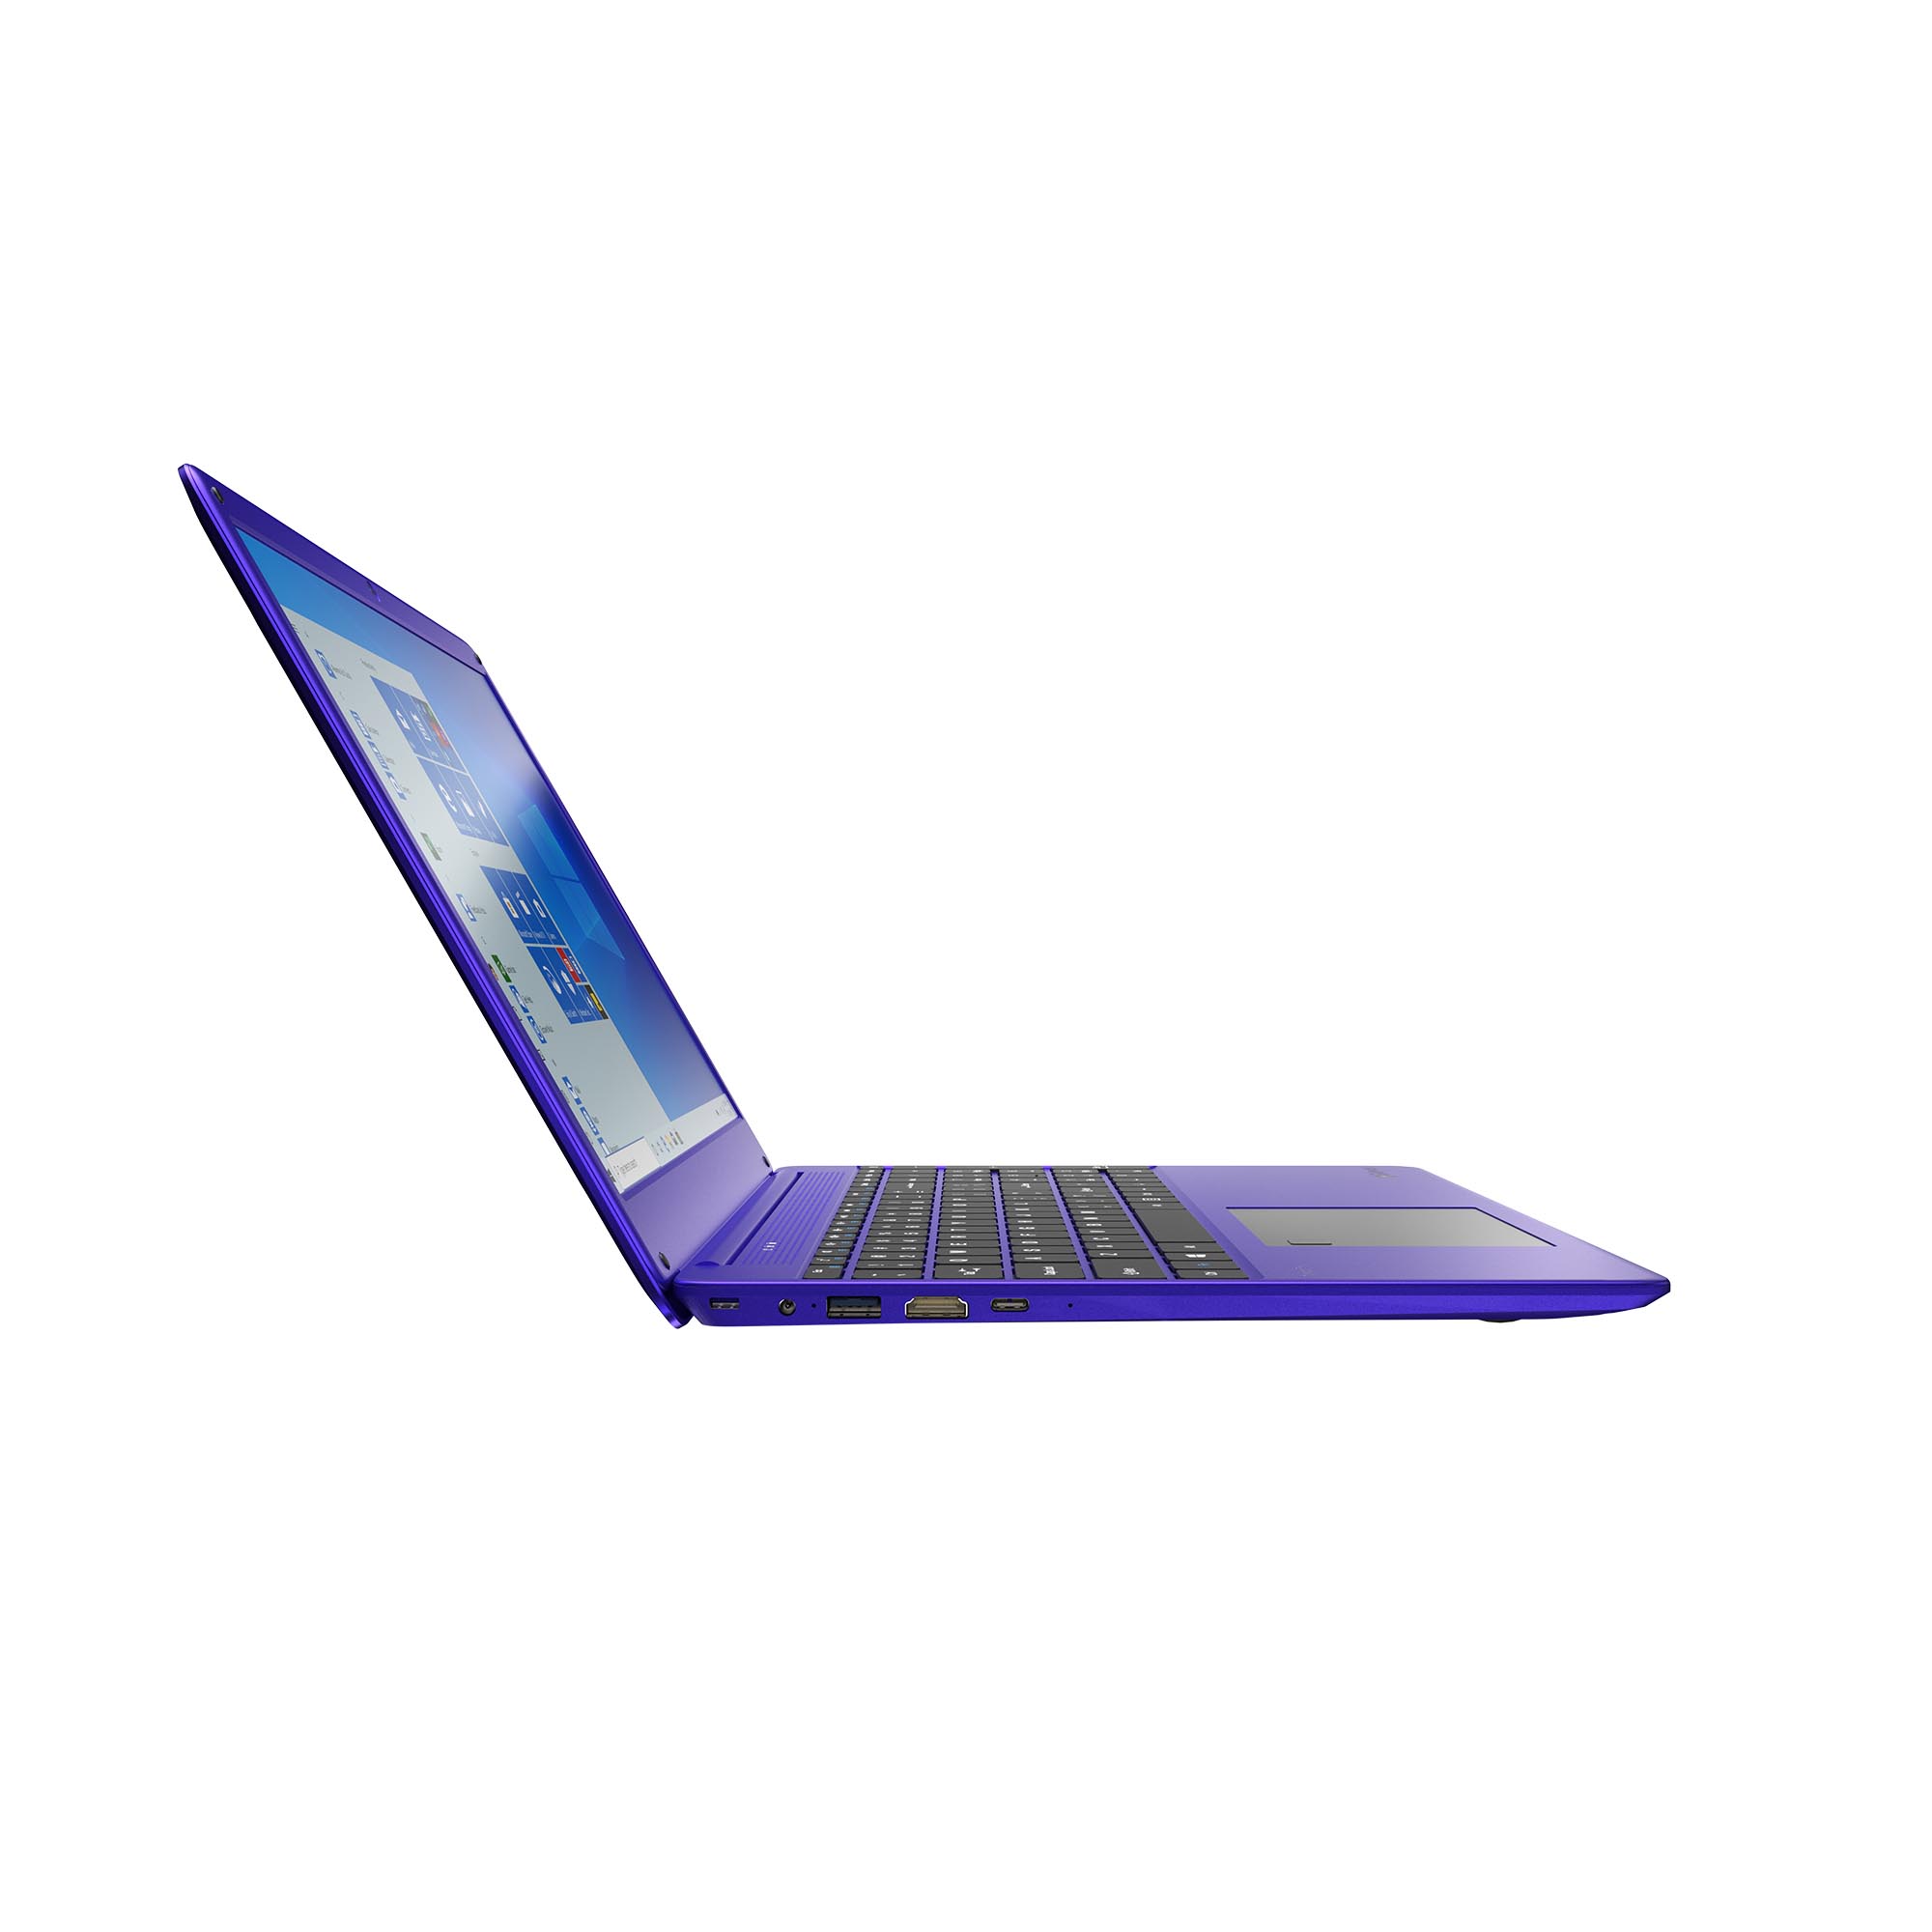 Notebook Gateway GWTN156-4PR Amd Ryzen 5-3450U 2.1GHz / 8GB Ram / SSD 256GB / Tela 15.6 FHD - Purple